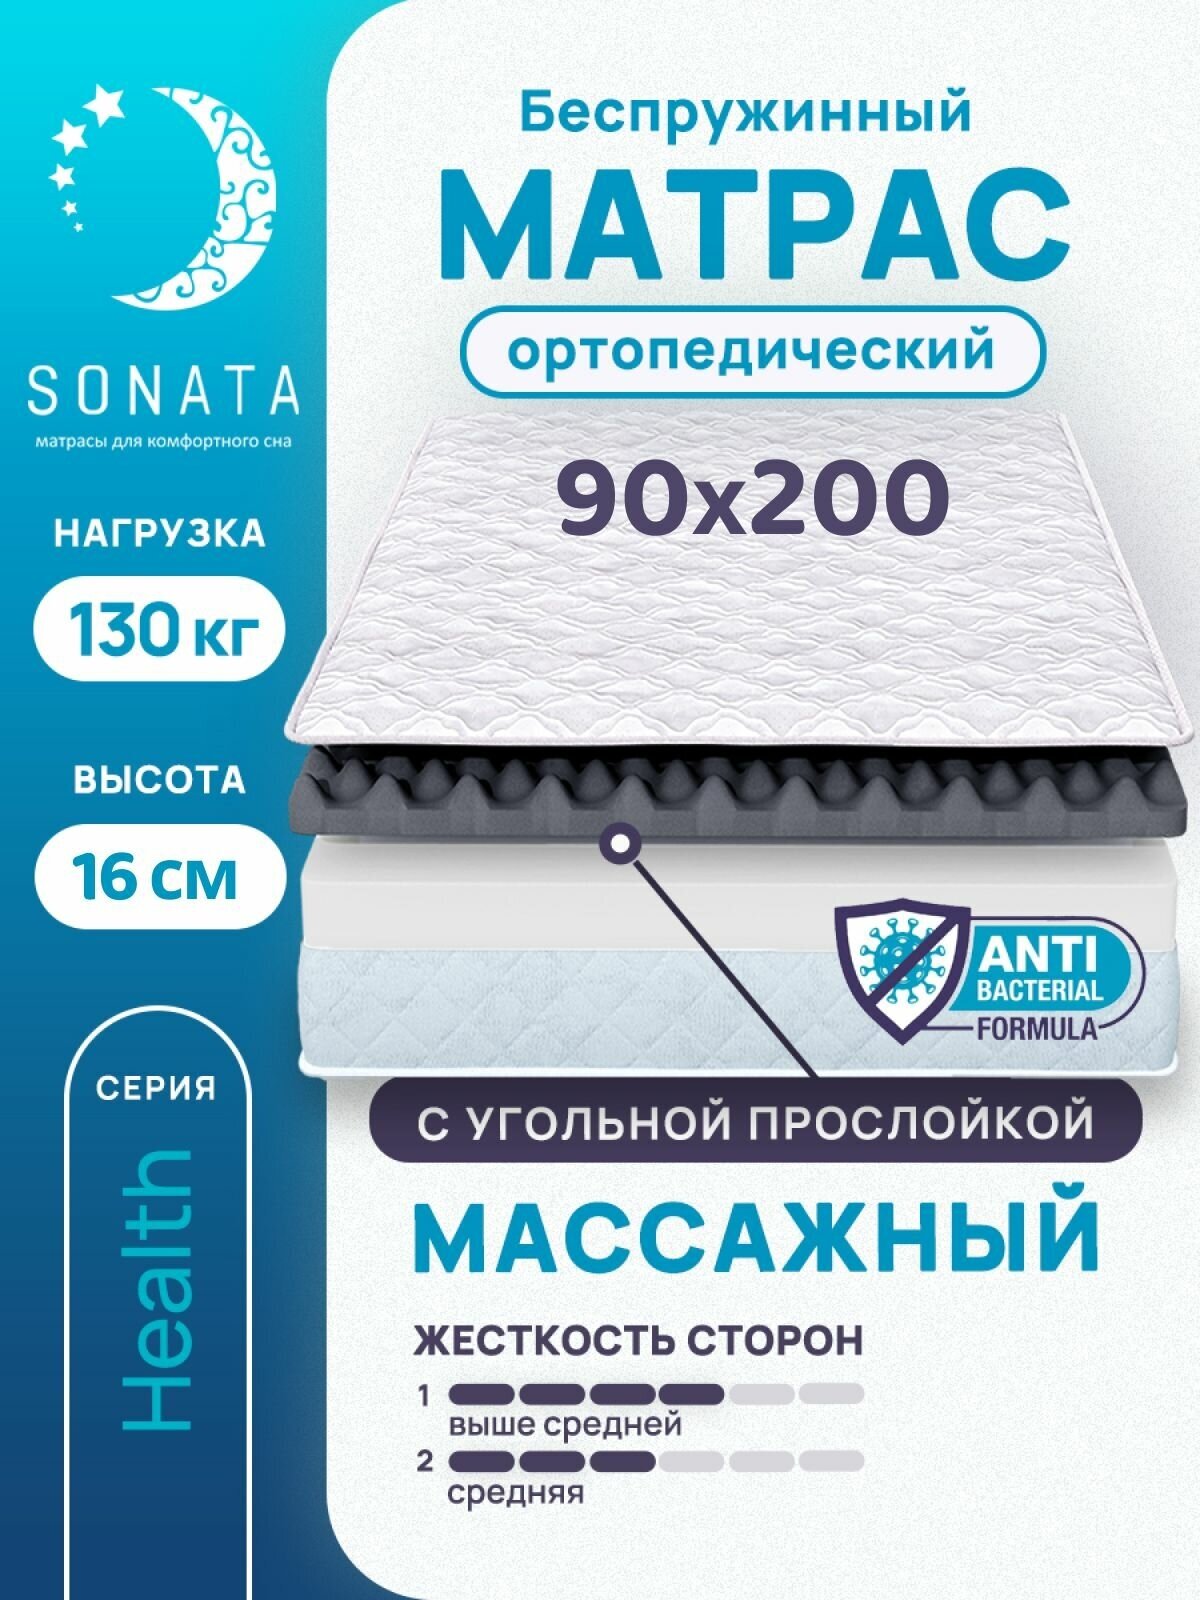 Матрас 90х200 см SONATA, беспружинный, односпальный, матрац для кровати, высота 16 см, с массажным эффектом